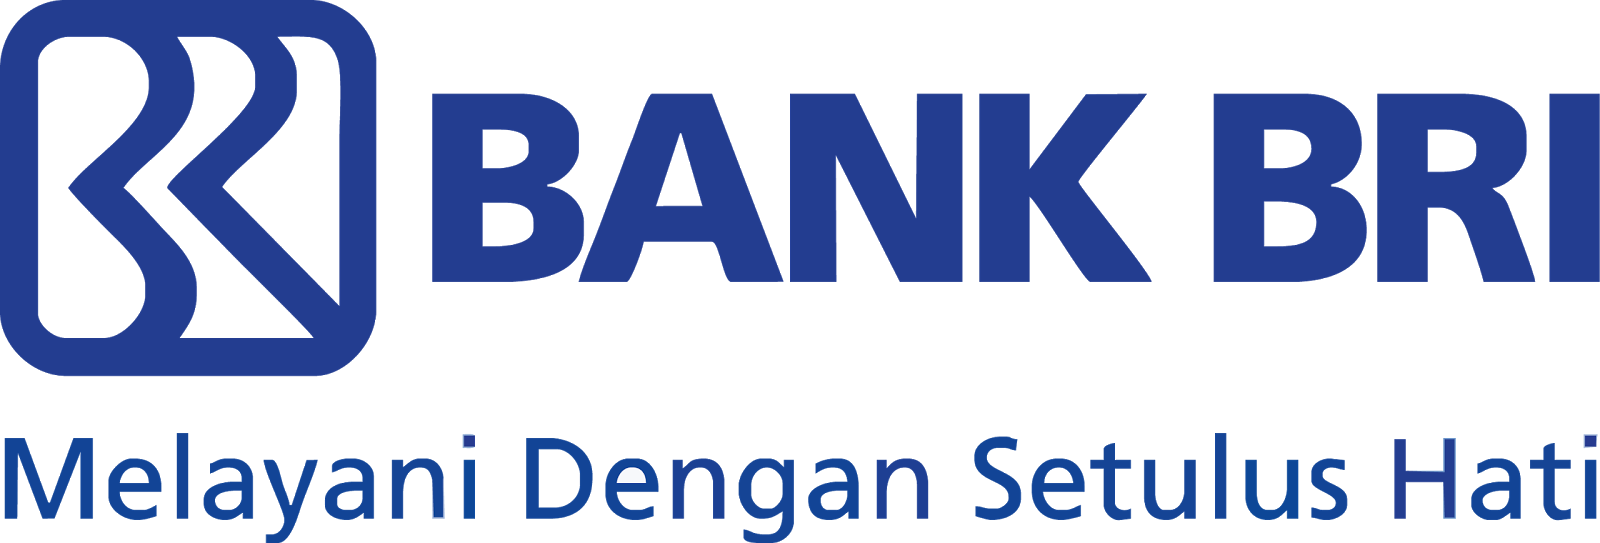 Lowongan Bank Bri Tahun 2017 2018 - Lowongan Kerja Jakarta